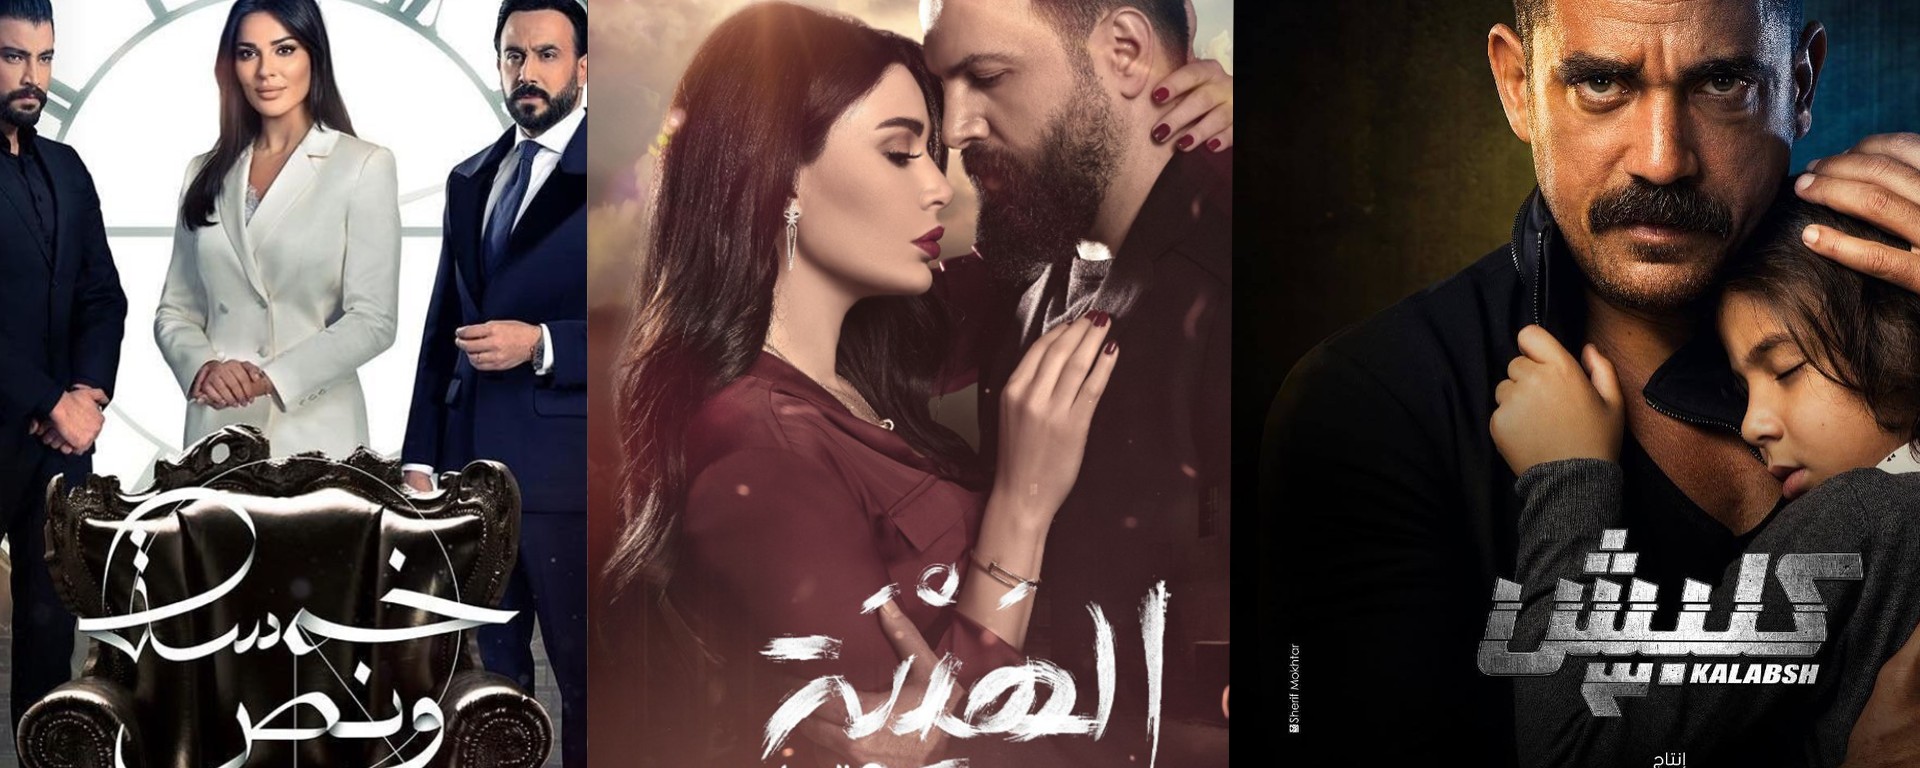 قصص حب تعيد نفسها وأبطال بسبع أرواح توقعاتنا لقصص مسلسلات رمضان قبل عرضها